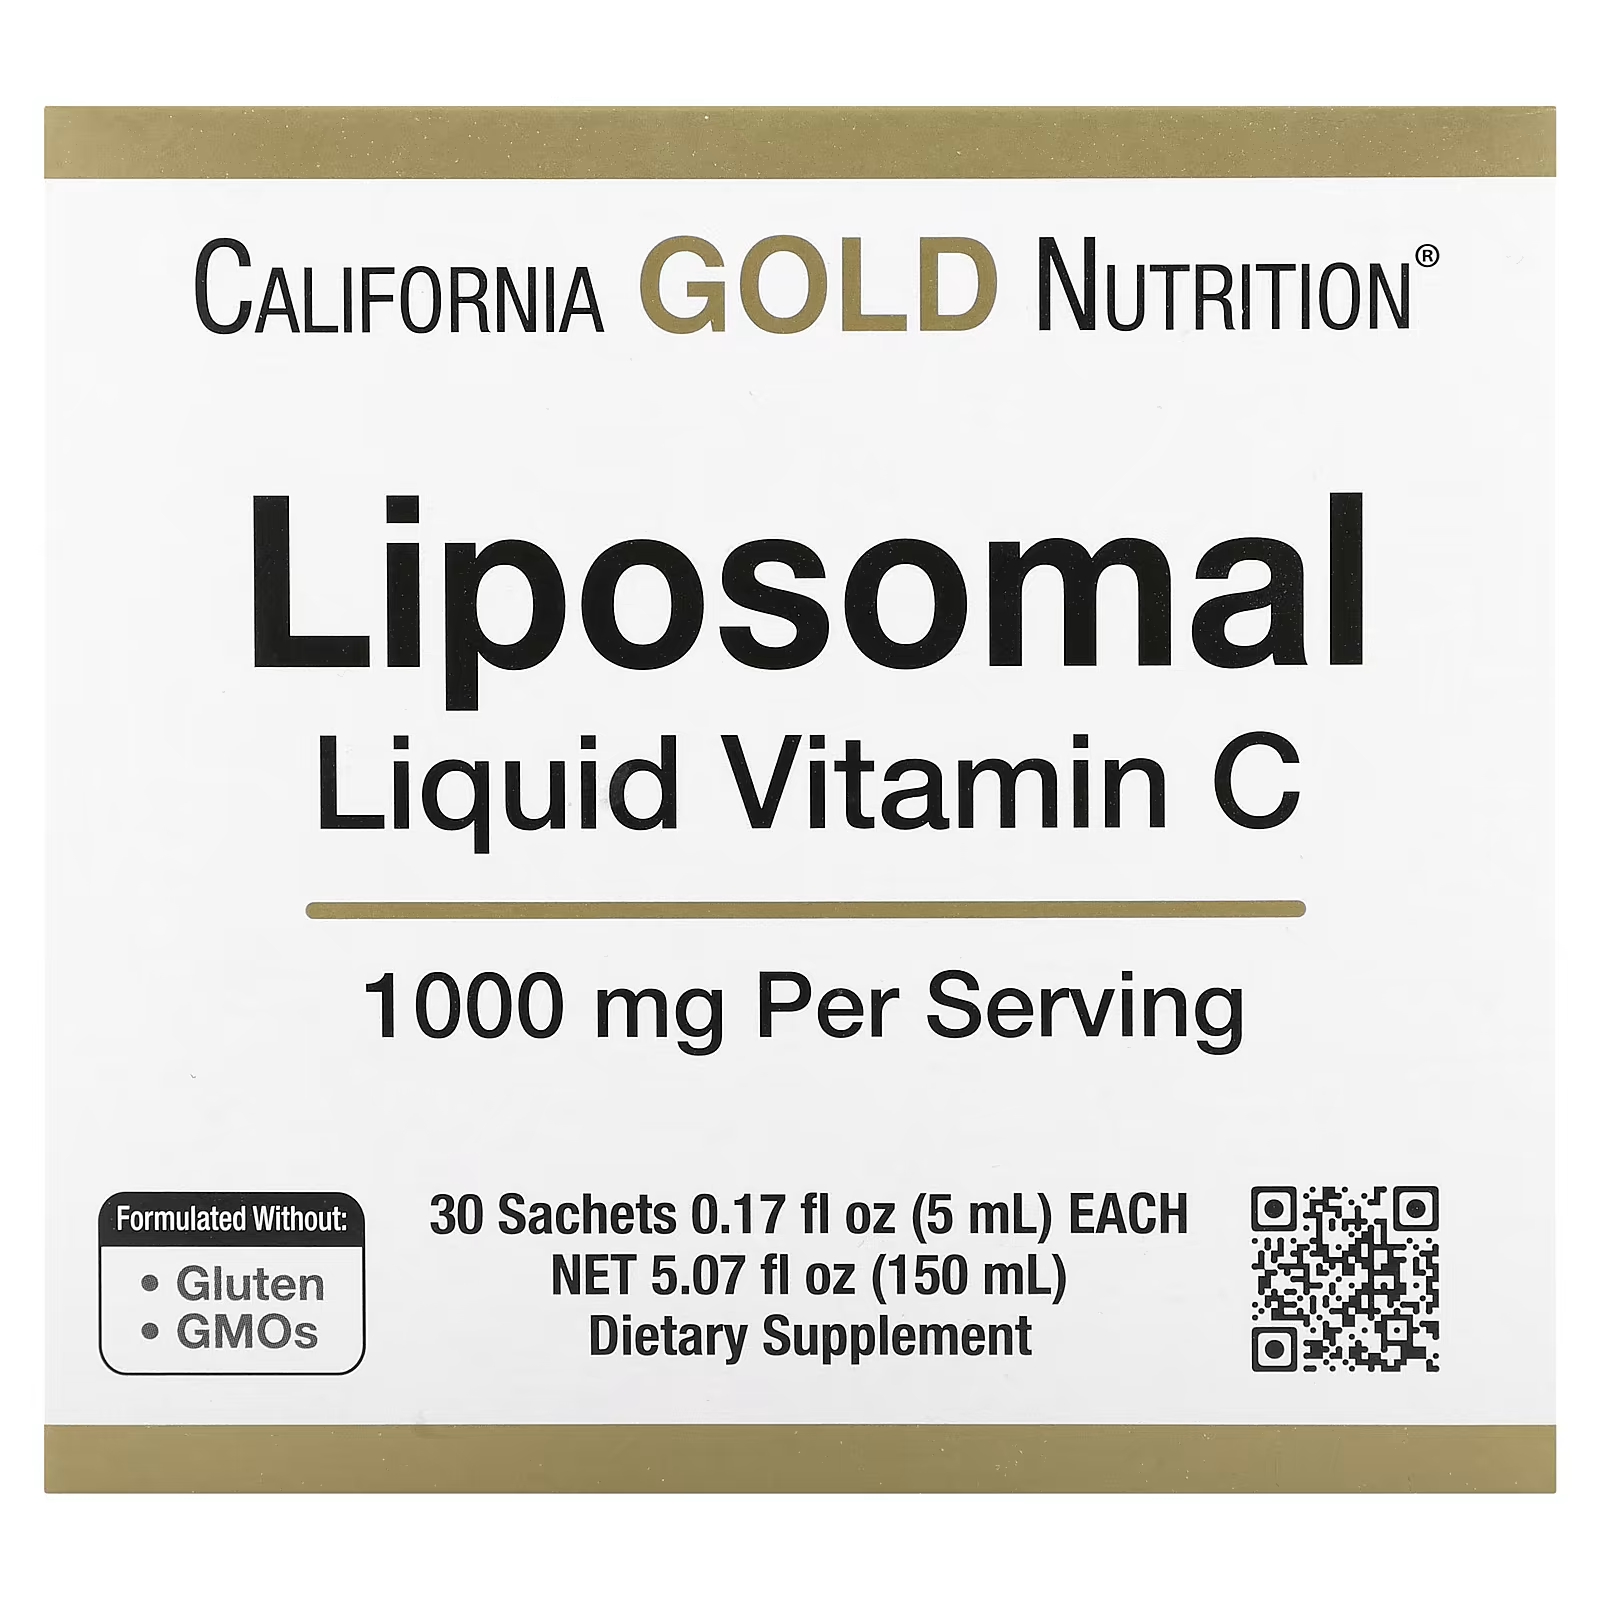 Липосомальный жидкий витамин С без вкуса, 1000 мг, 30 пакетиков California Gold Nutrition